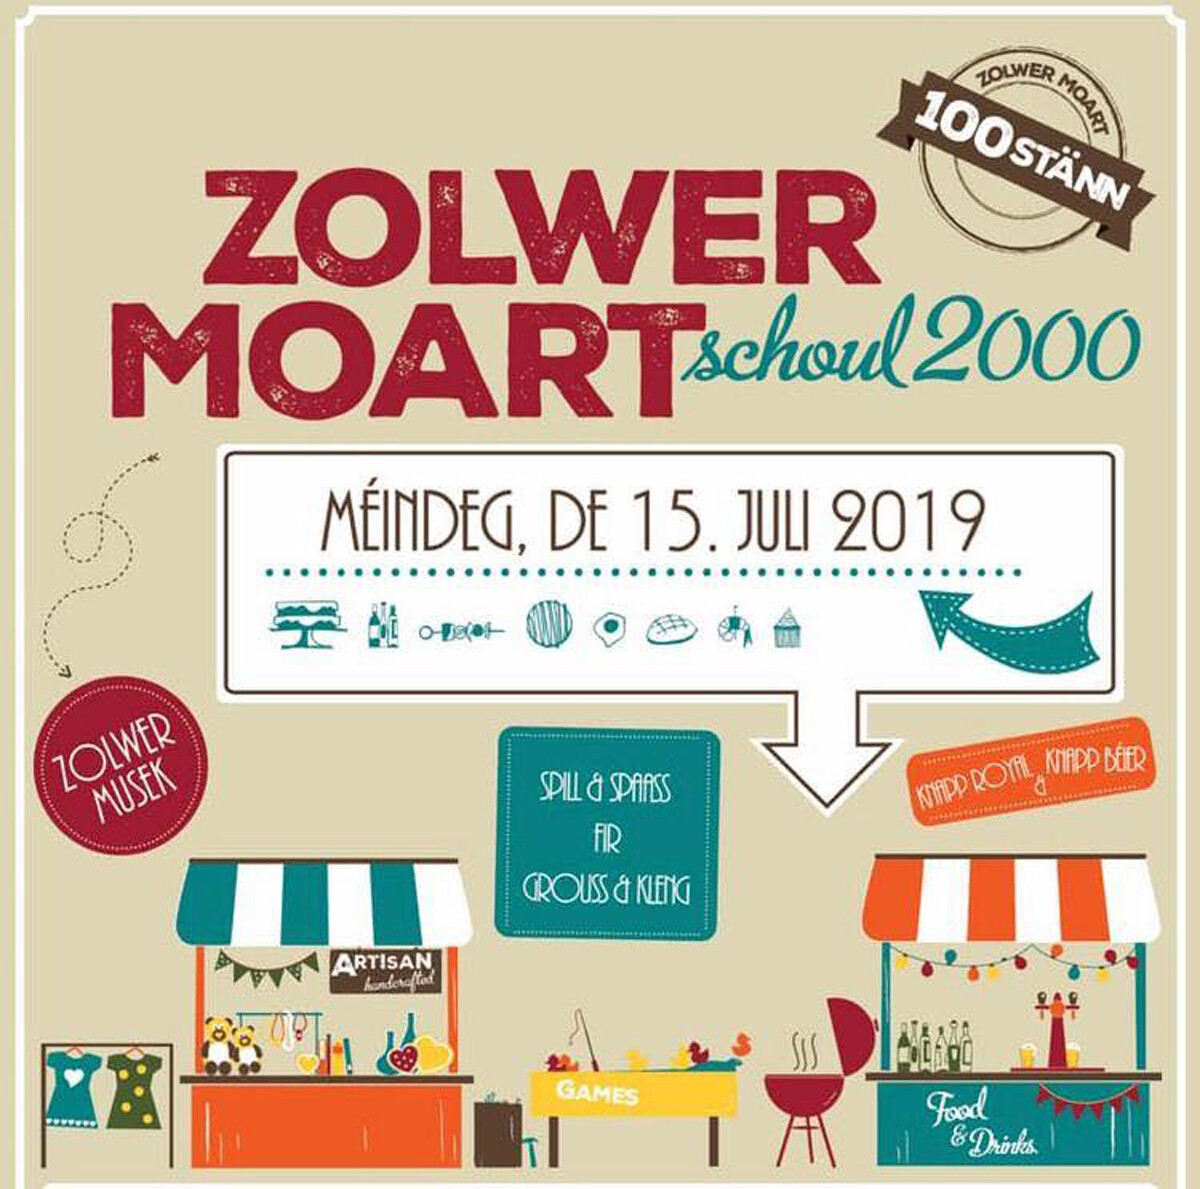 Zolwer Moart